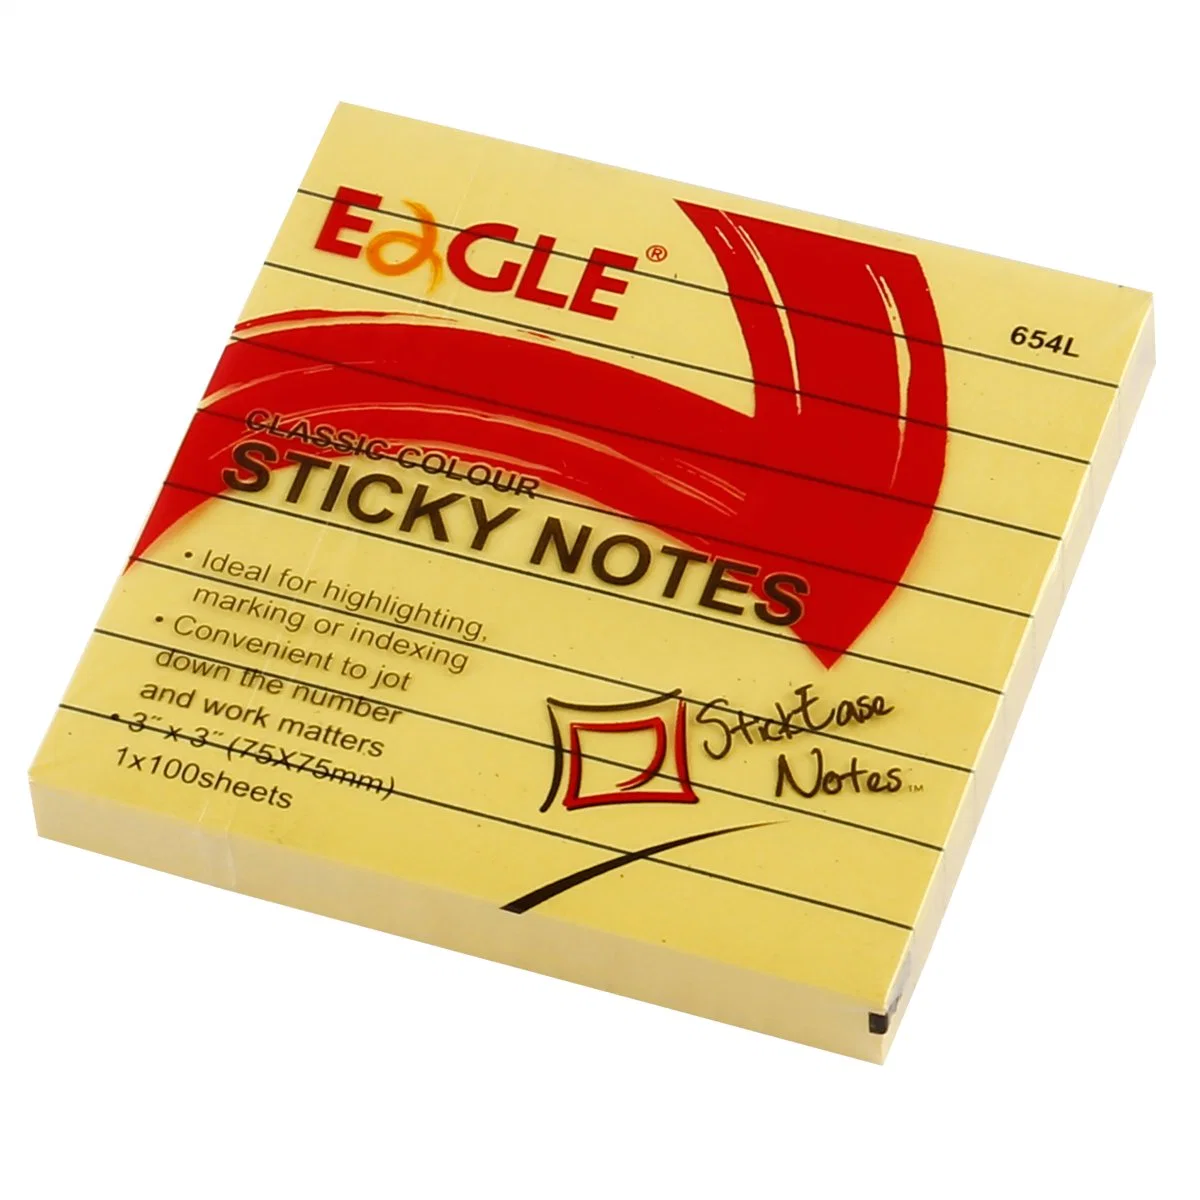 Eagle Sticky Note Office Stationery Self-Adhesive Removable Sticky Notes Sticky Note for Sale